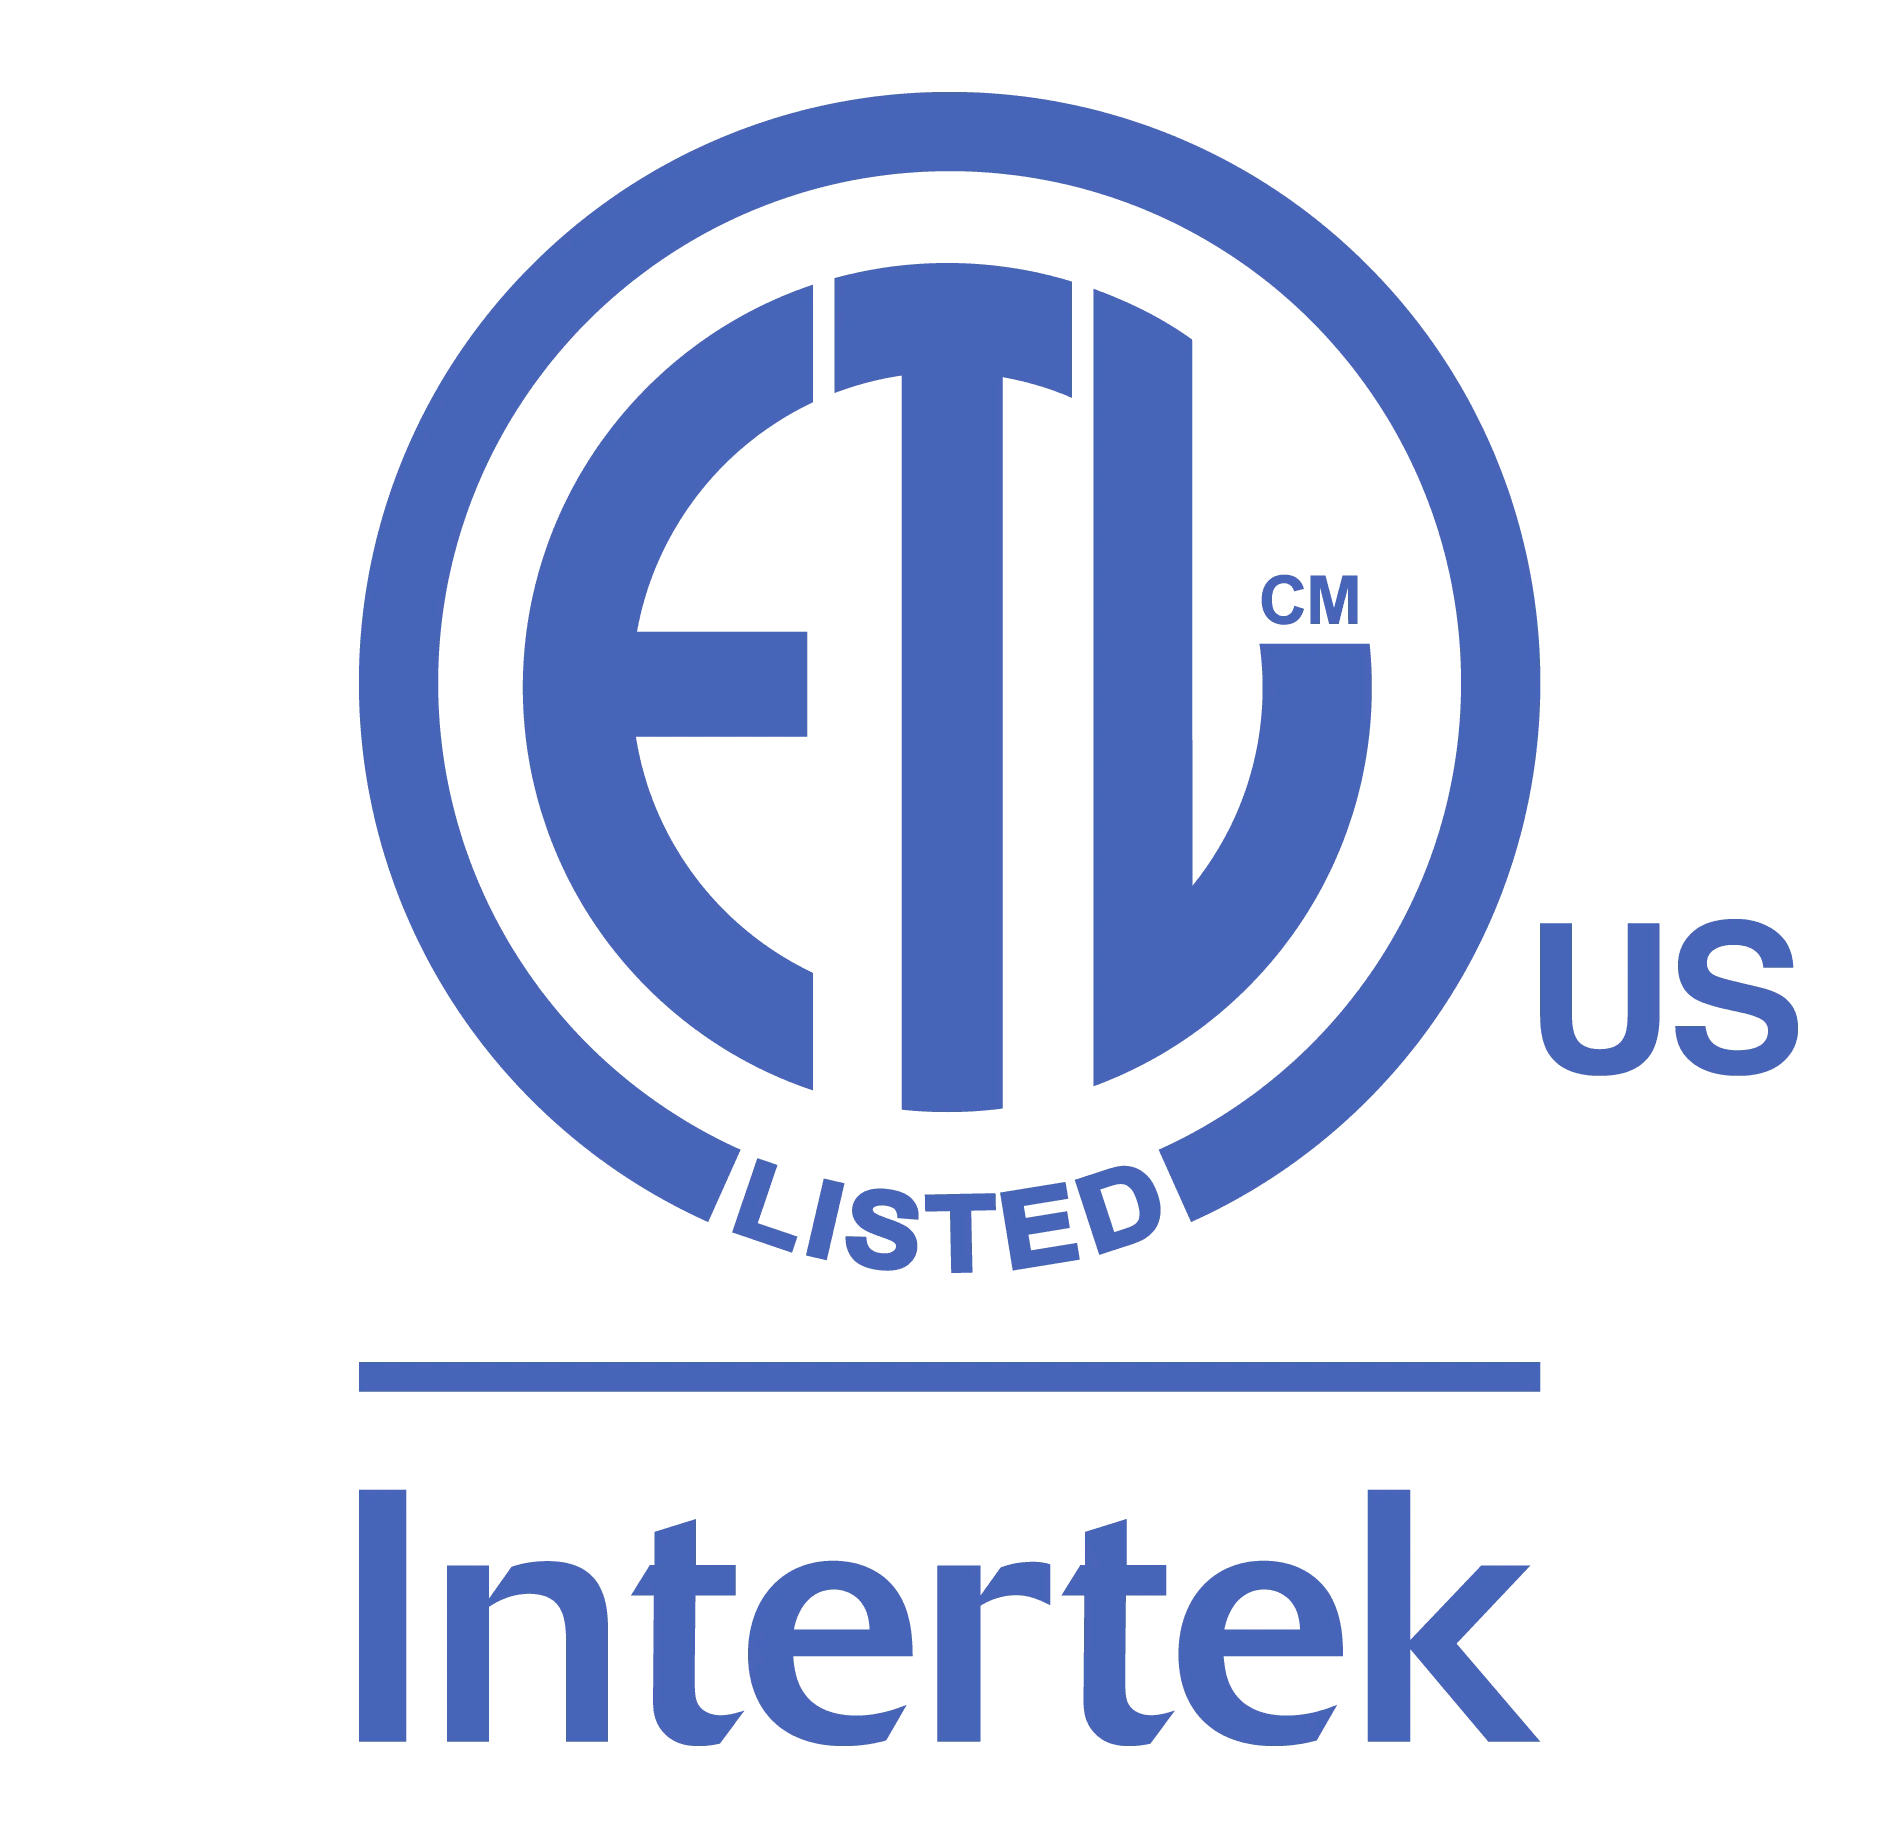 Intertek ETL Listed in the US